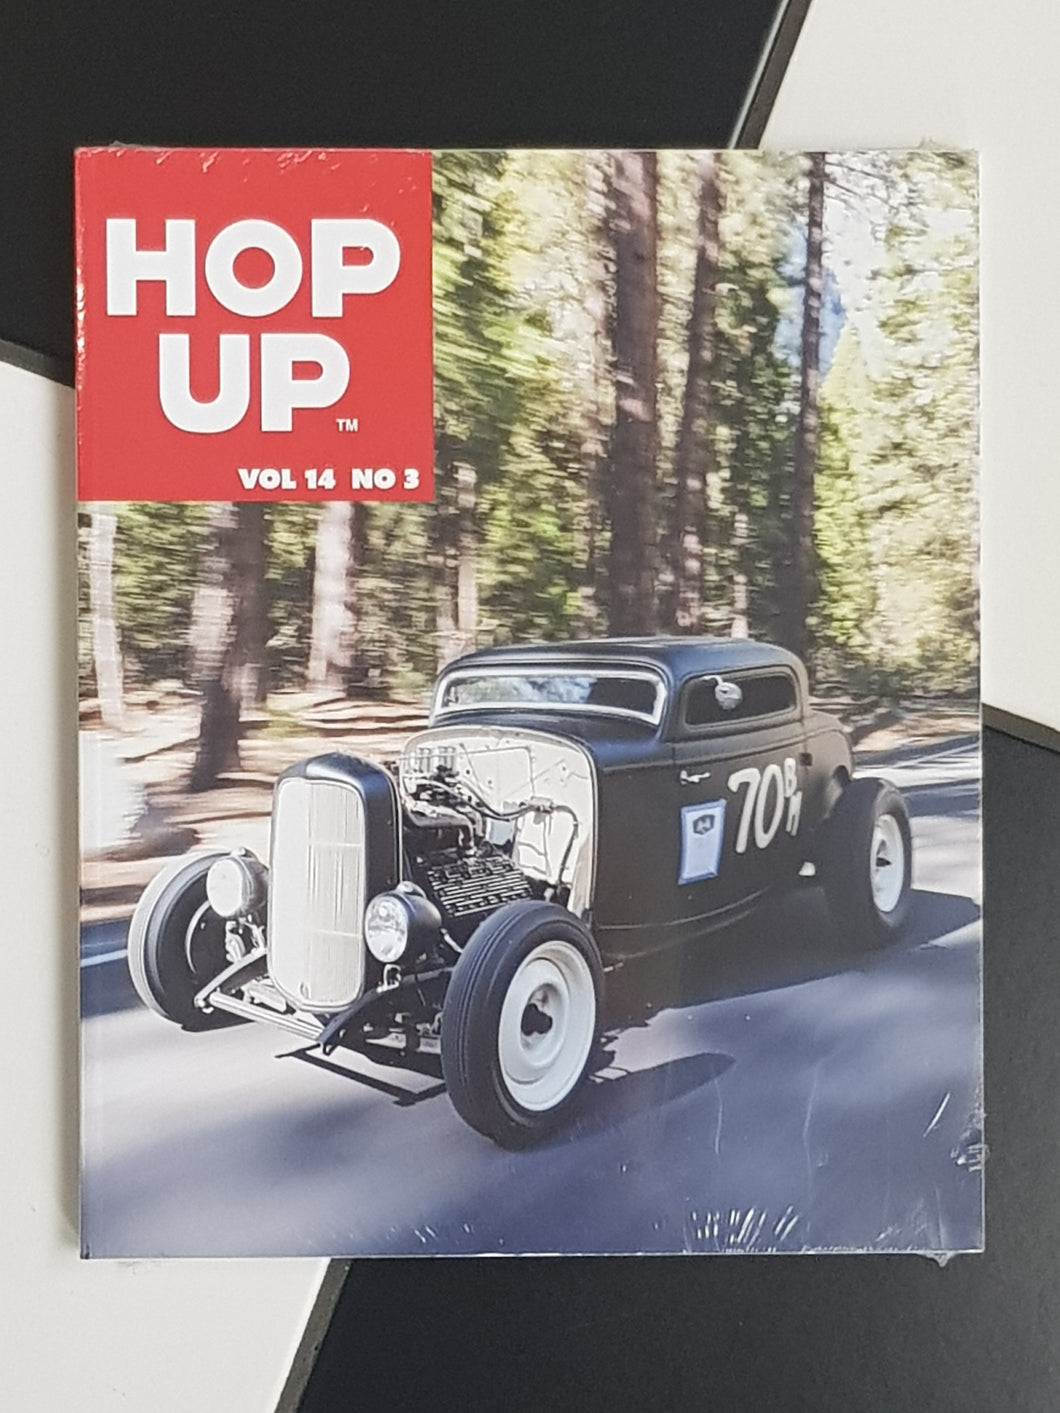 Hop Up - Volume 14 Number 3